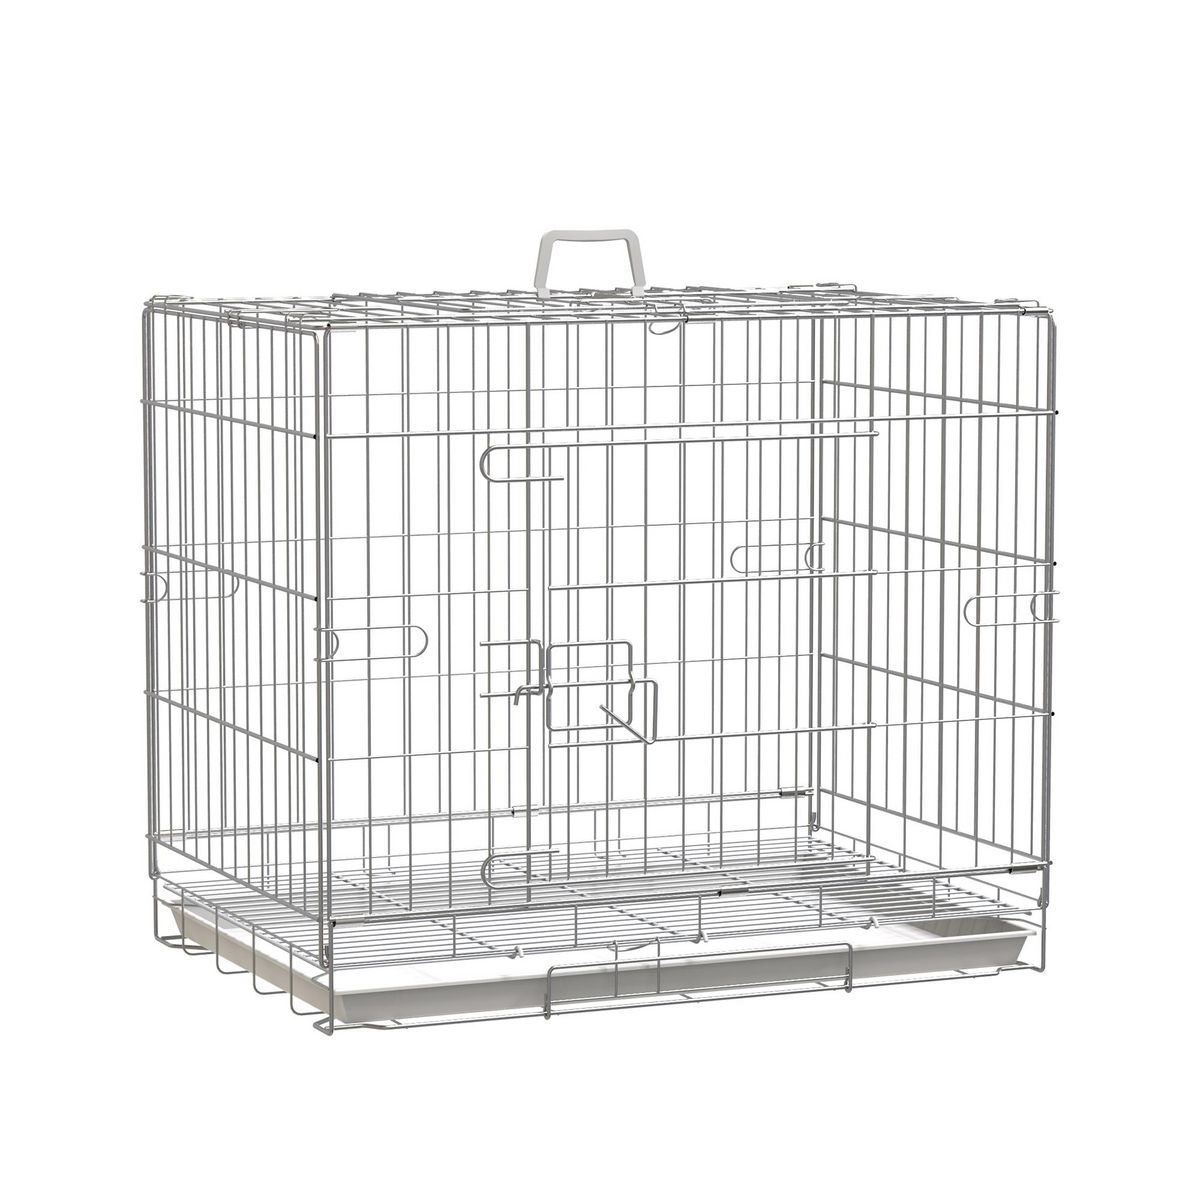 PAWHUT Cage pour chien pliable - plateau excrément coulissant - 2 portes verrouillable, poignée - dim. 61L x 43l x 50H cm - fer galvanisé PP blanc